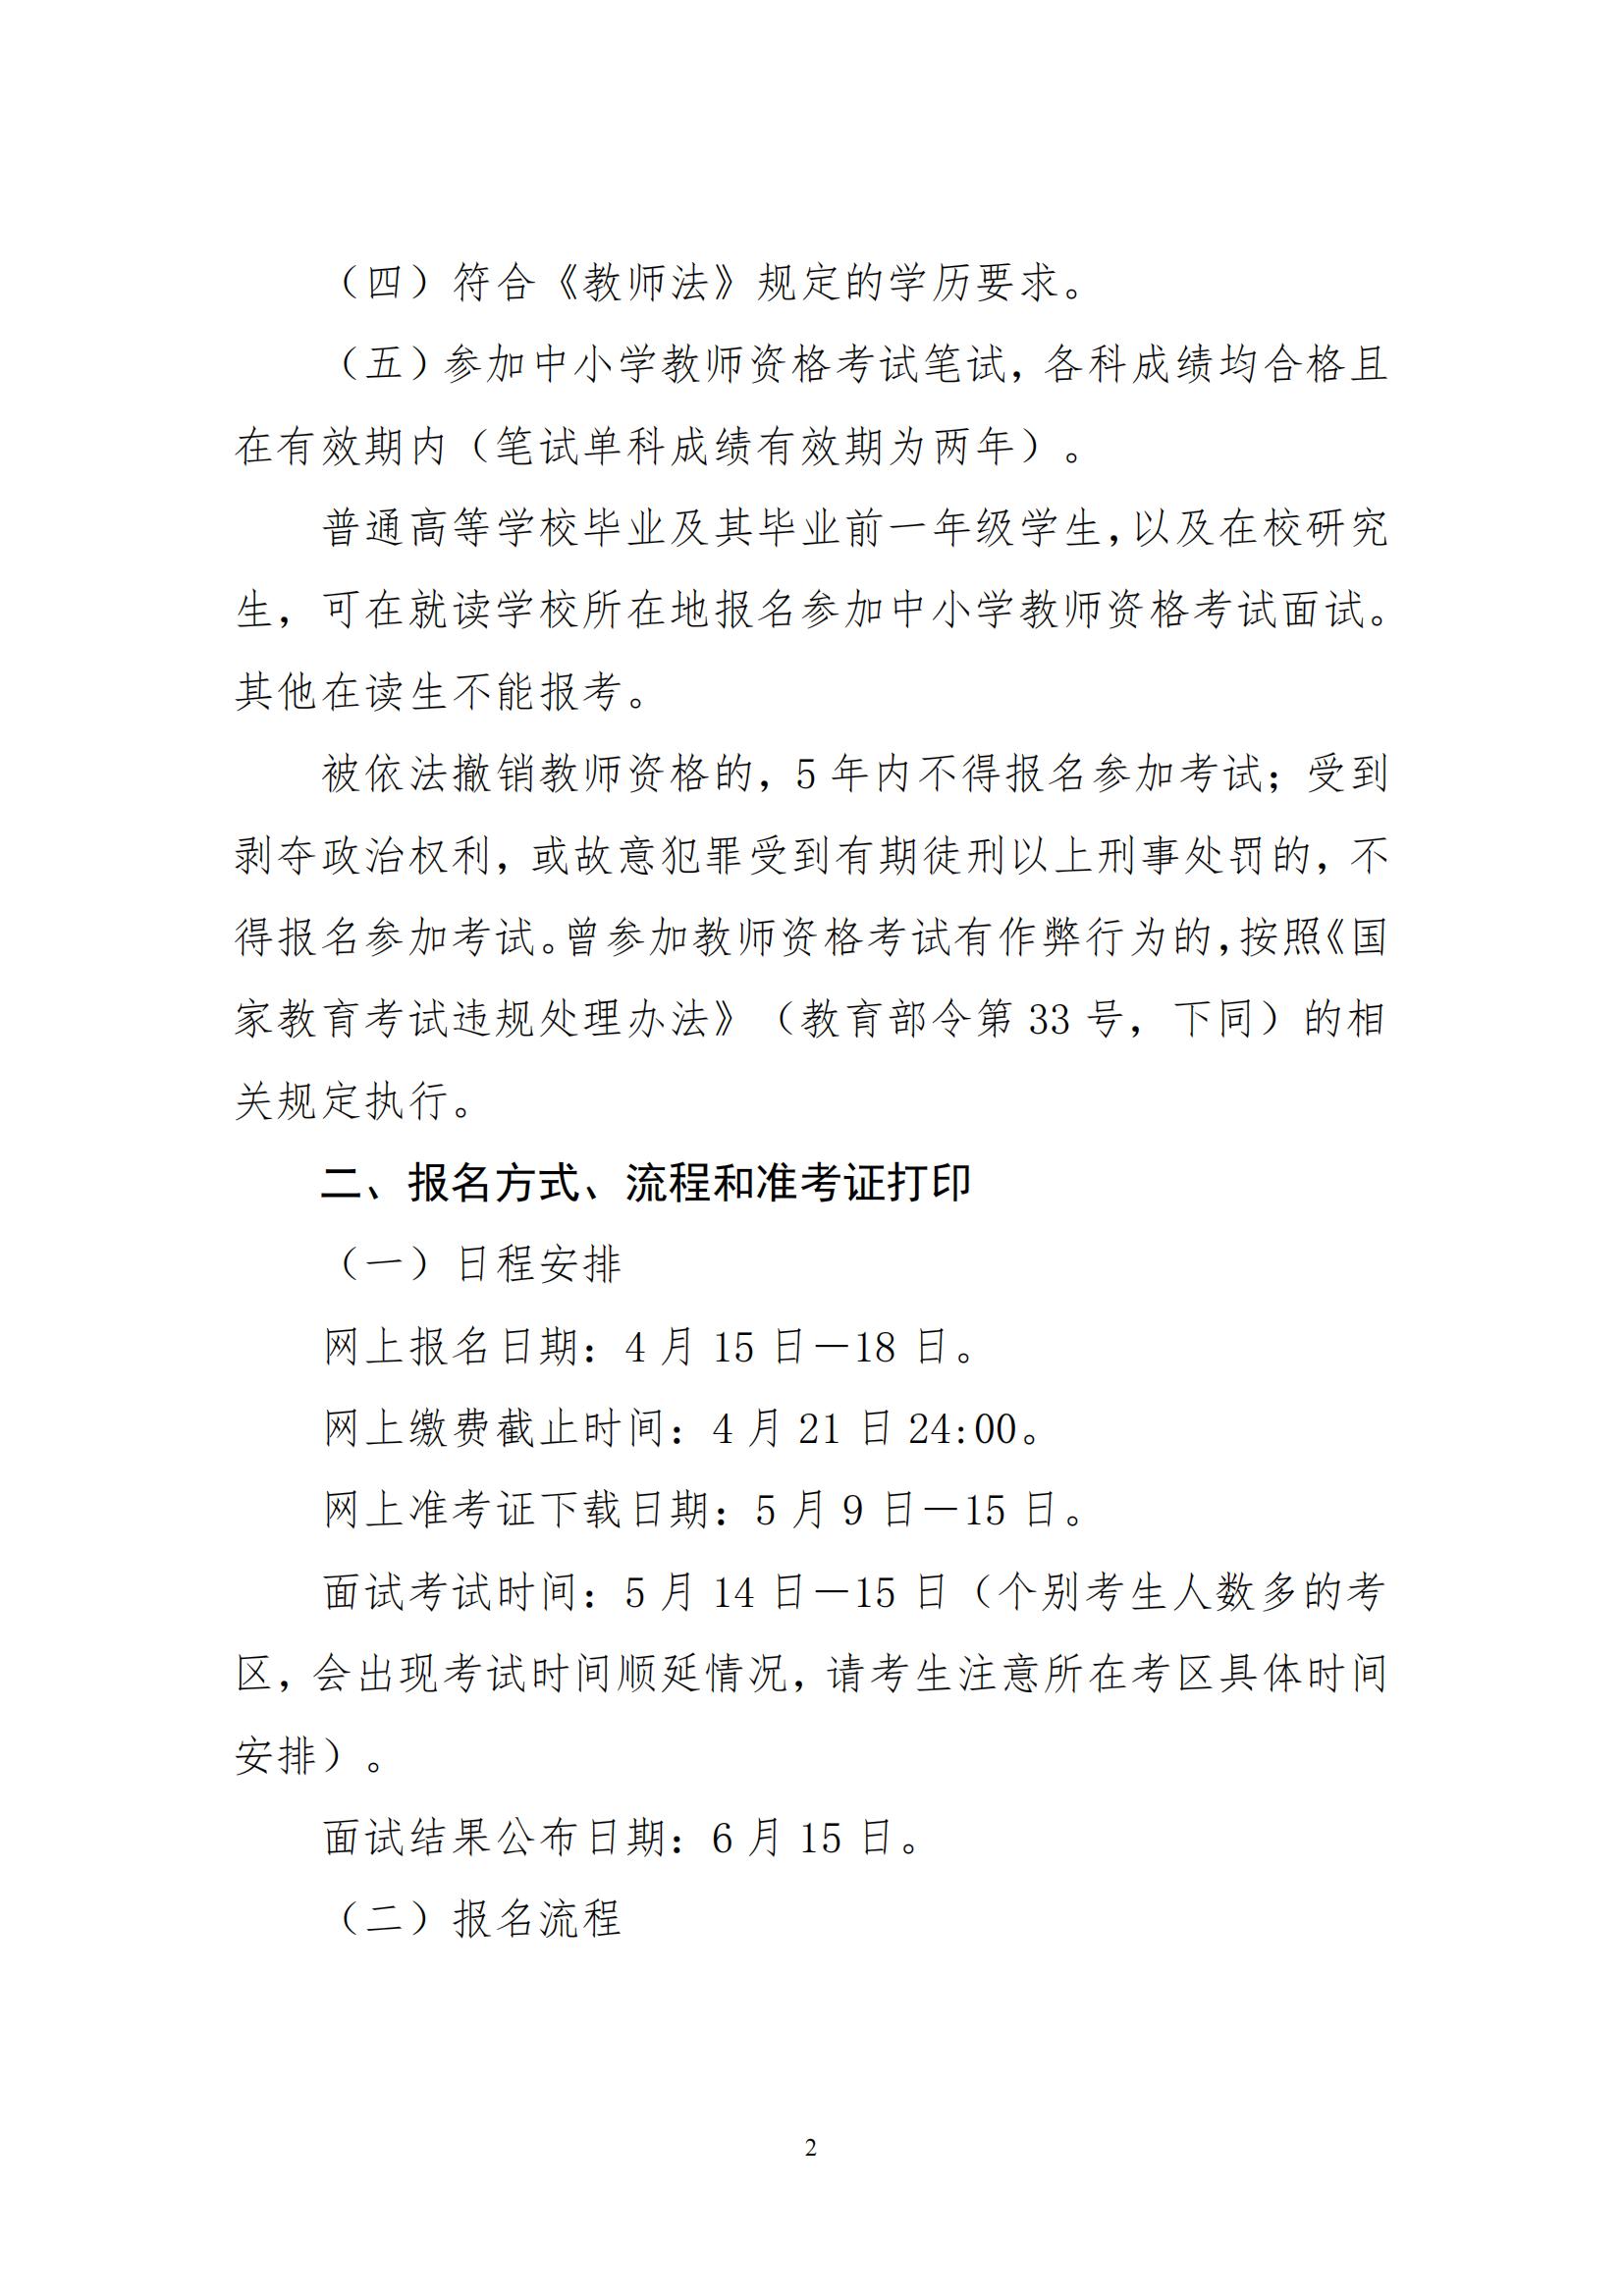 2022年湖南省上半年中小学教师资格考试面试公告(图2)